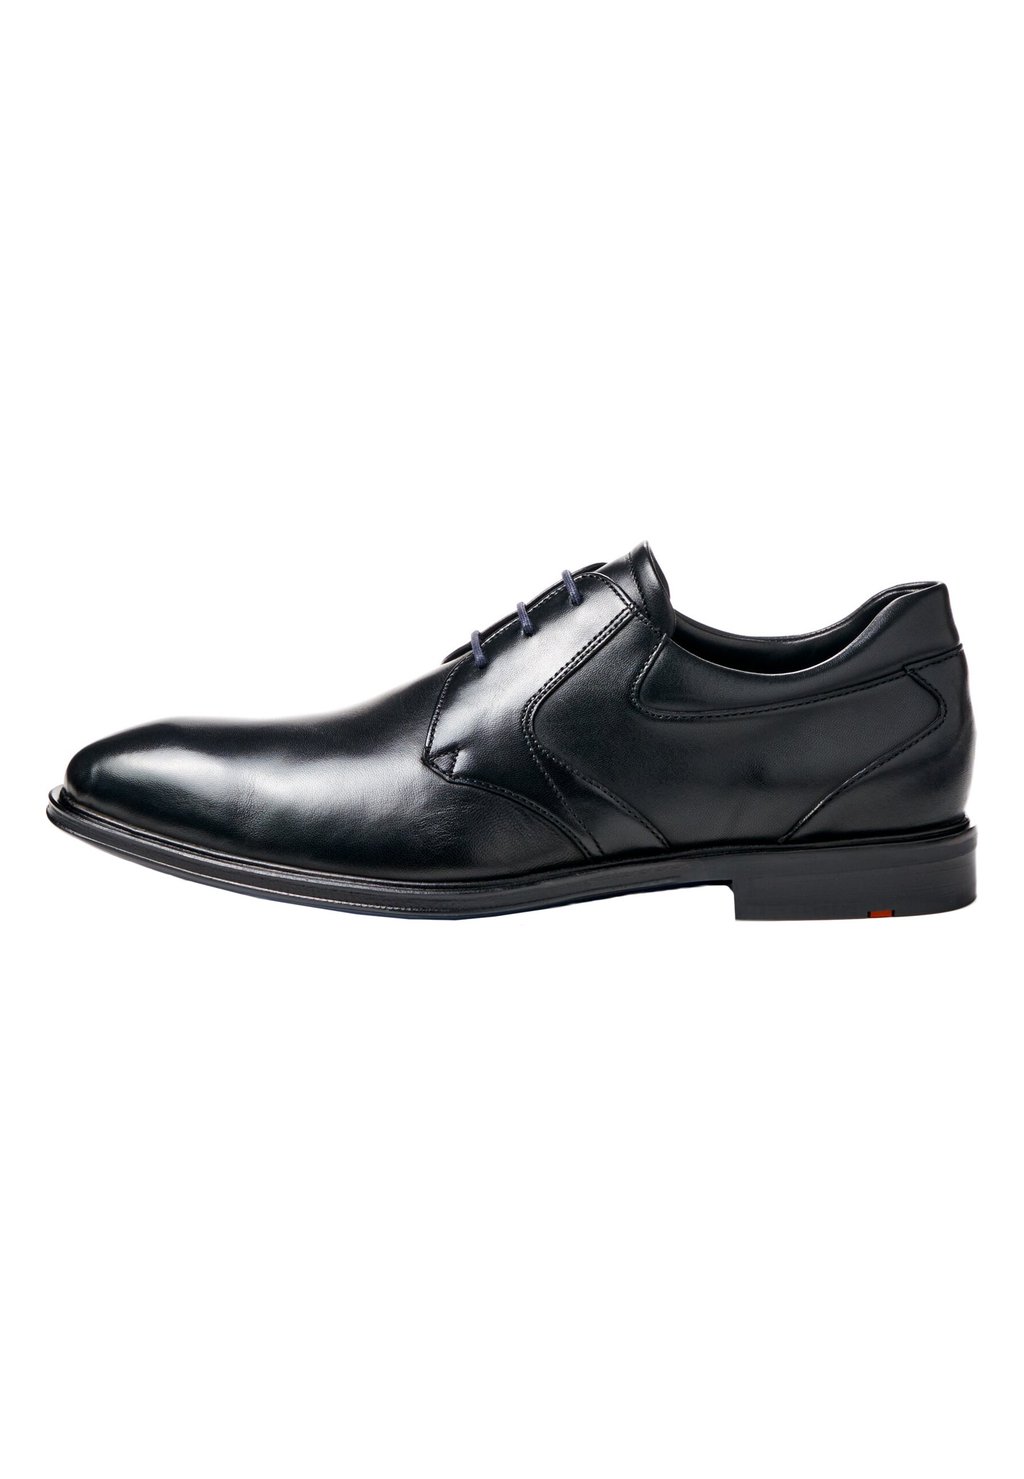 Элегантные туфли на шнуровке Monty Lloyd, цвет schwarz